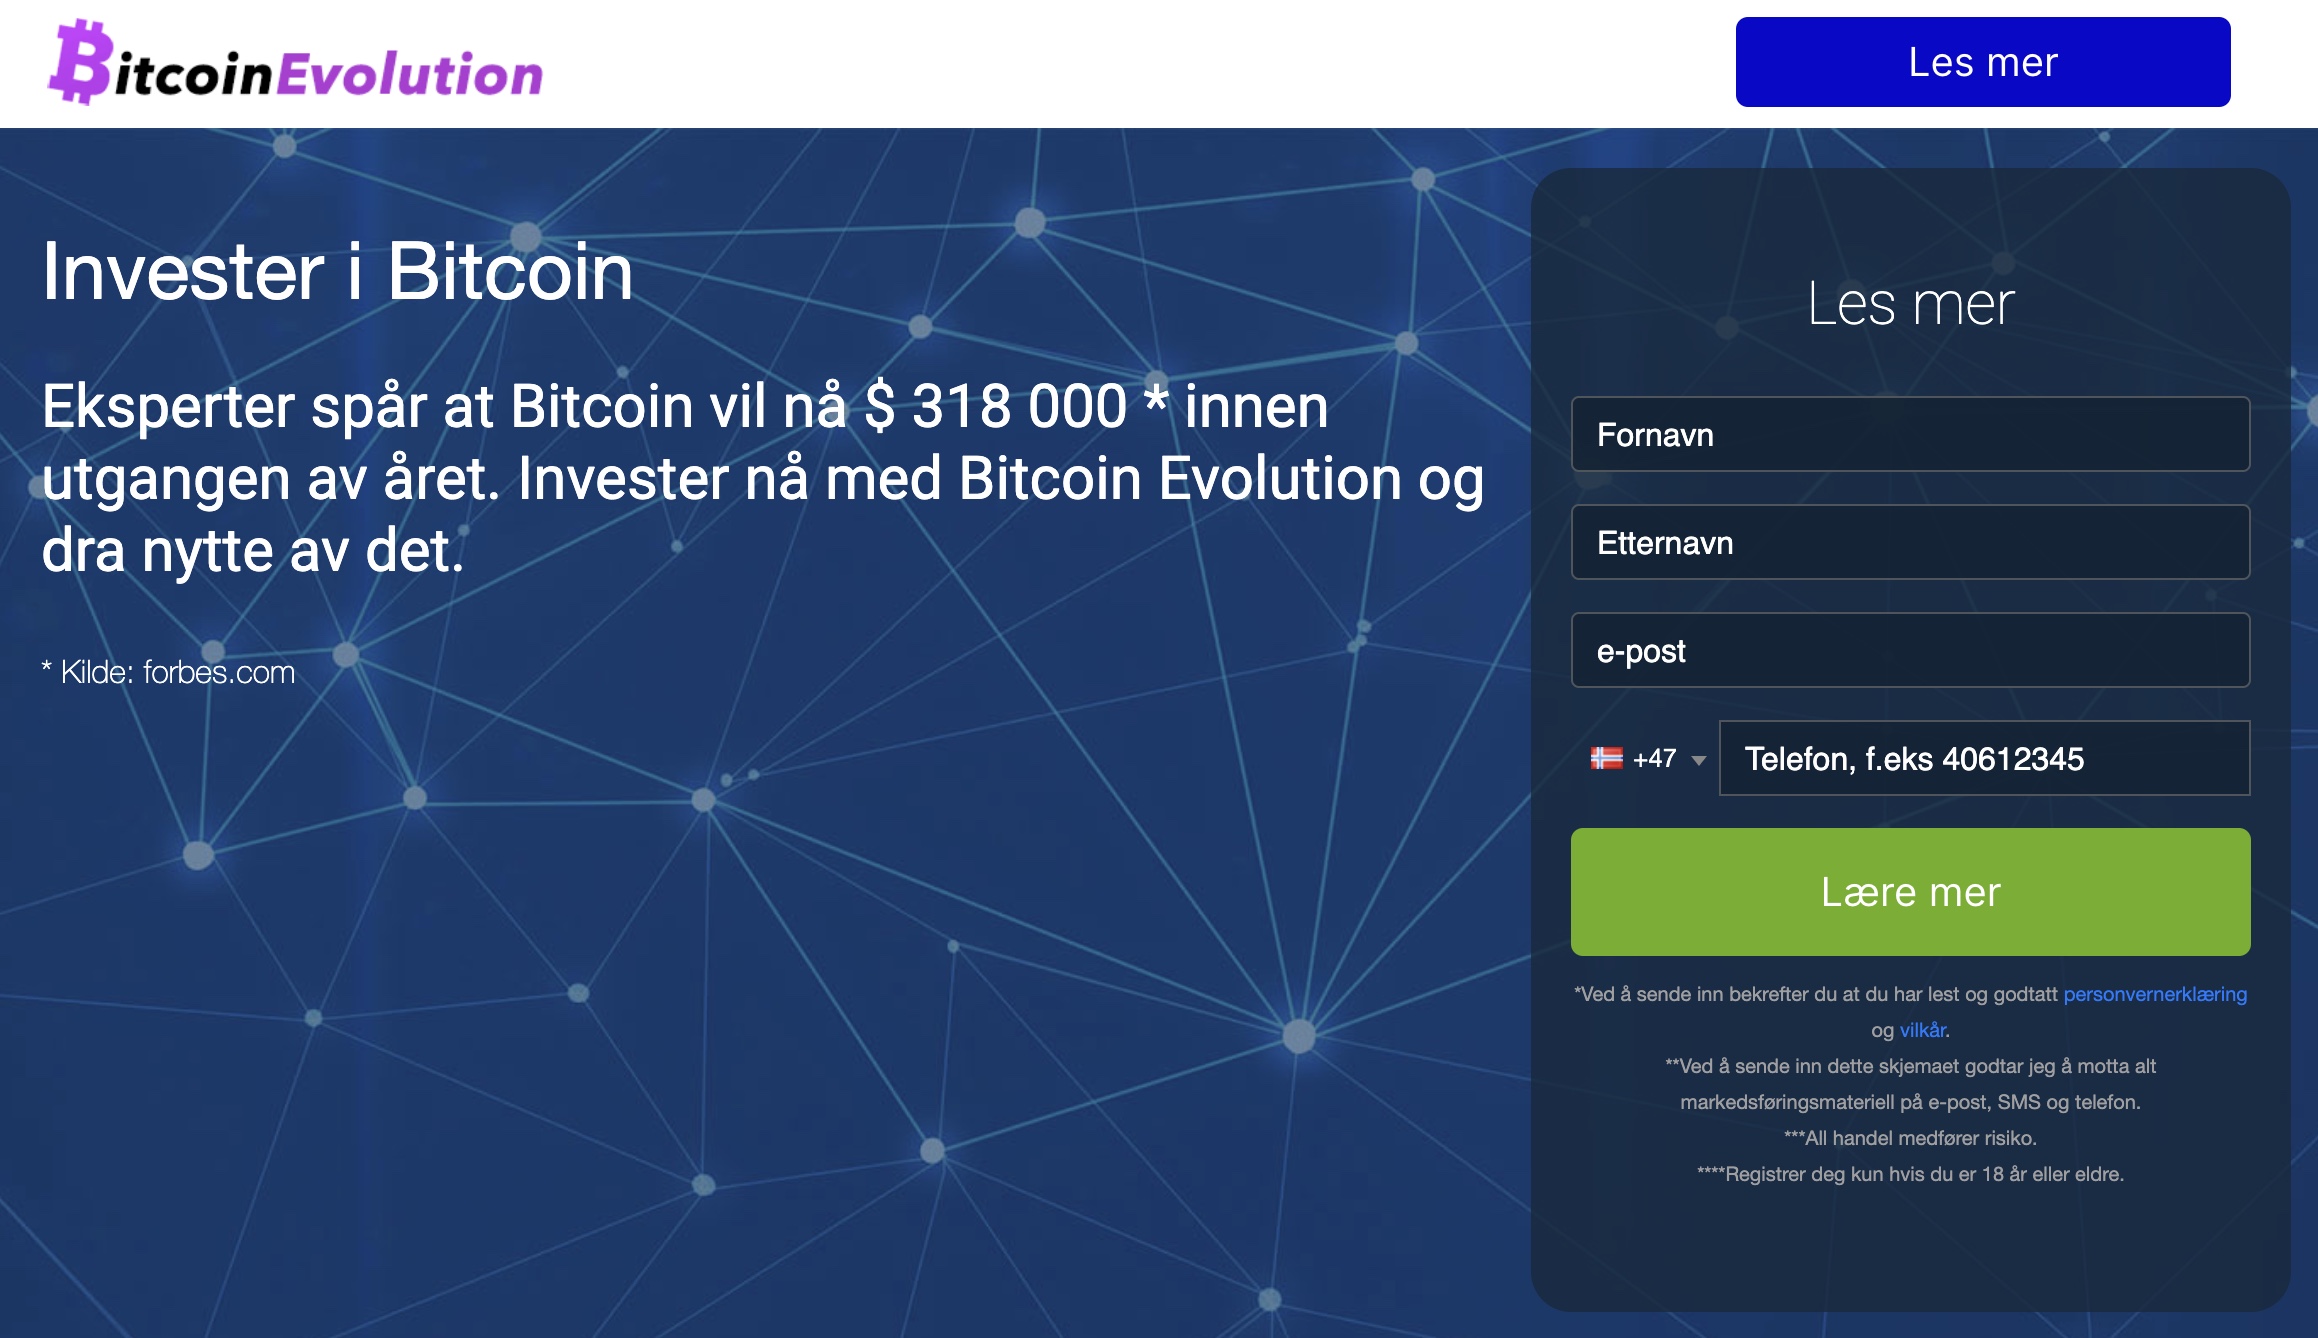 Bitcoin evolution hjemmeside med mulighet for registrering